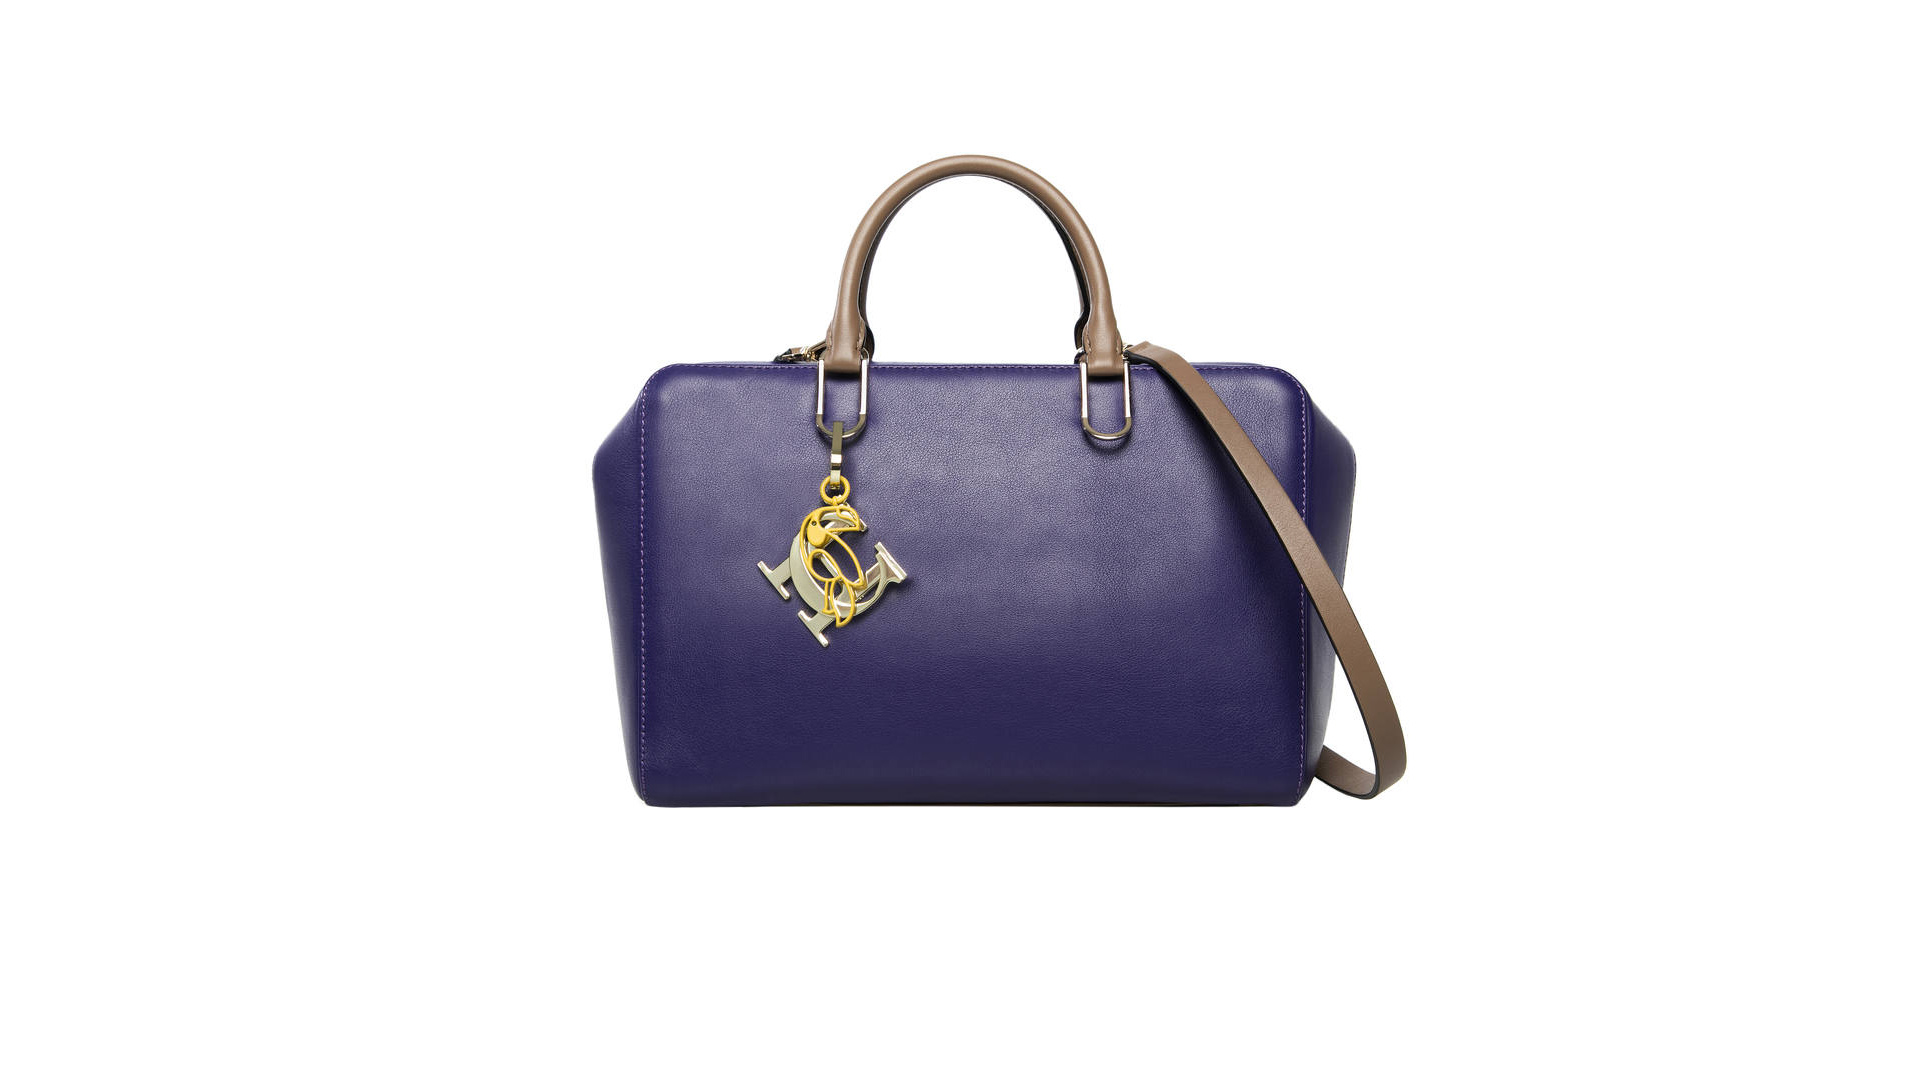 Como parte de la colección Royal, la venezolana lanzó su nuevo bolso "Duke Bag" con características versátiles pero elegantes como todos sus diseños